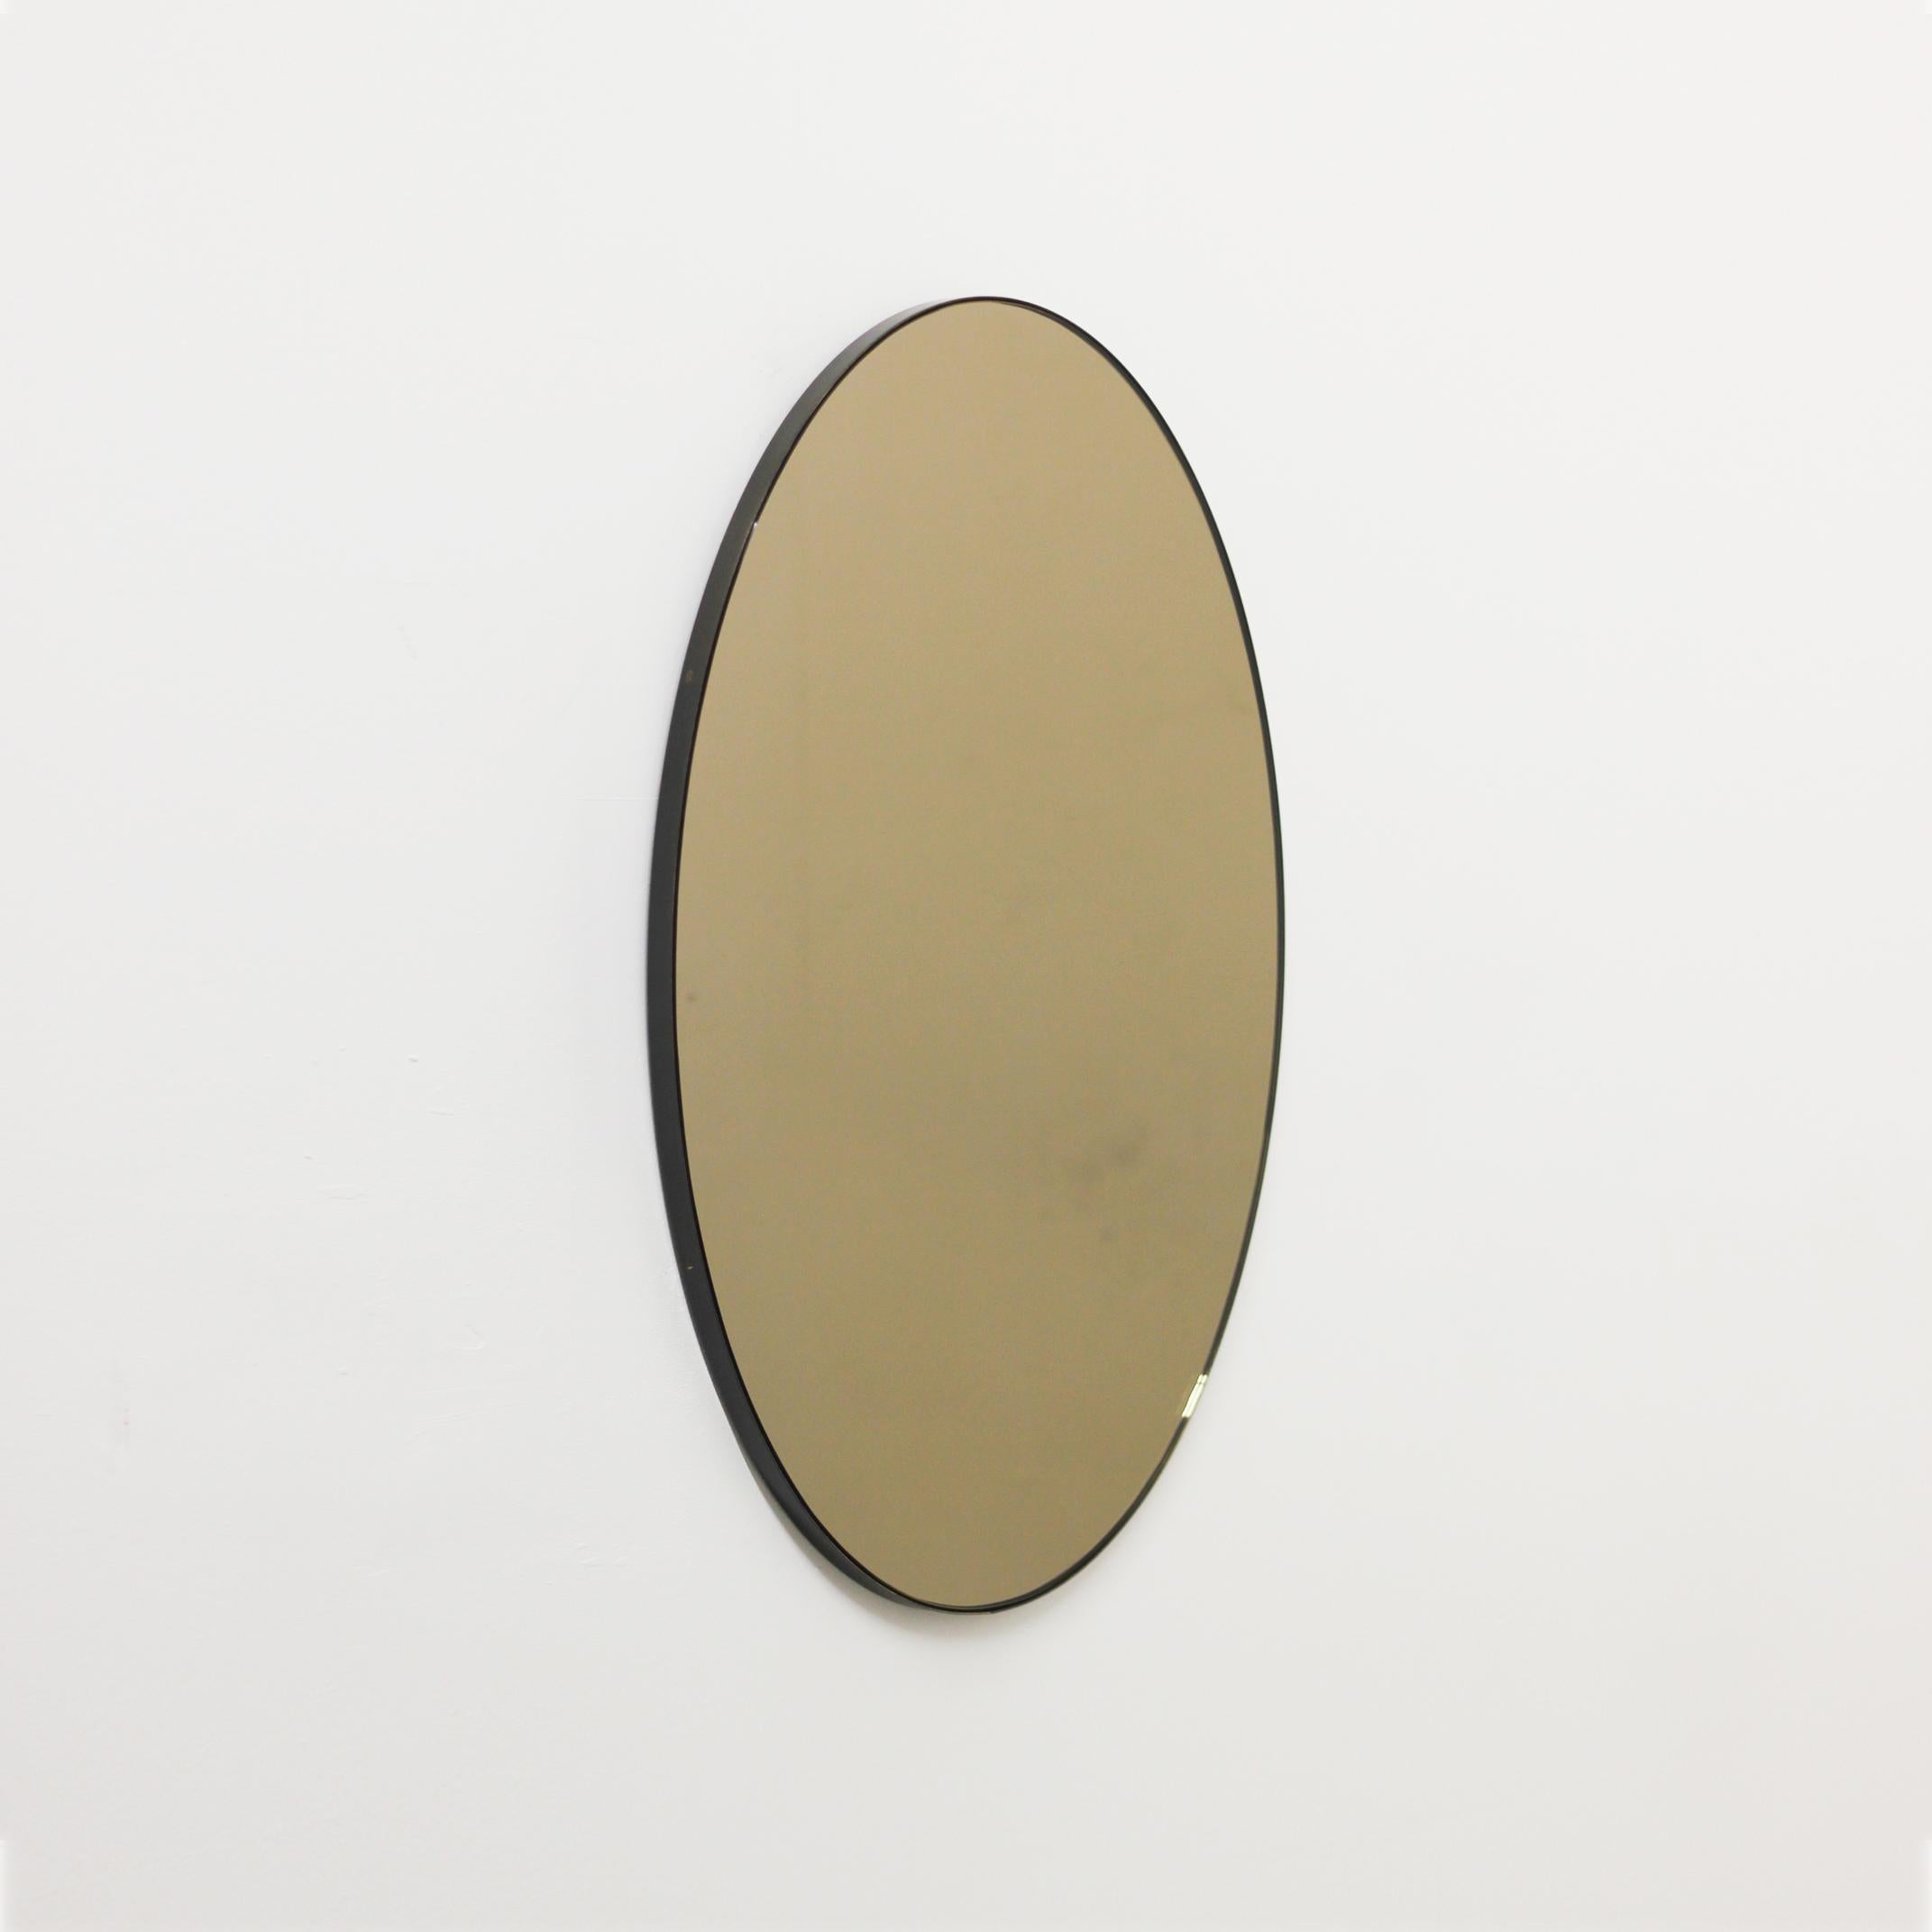 Miroir contemporain ovale teinté bronze avec un élégant cadre en laiton patiné bronze. Conçu et fabriqué à la main à Londres, au Royaume-Uni.

Ce miroir est entièrement personnalisable. Expédition sécurisée et entièrement assurée dans le monde